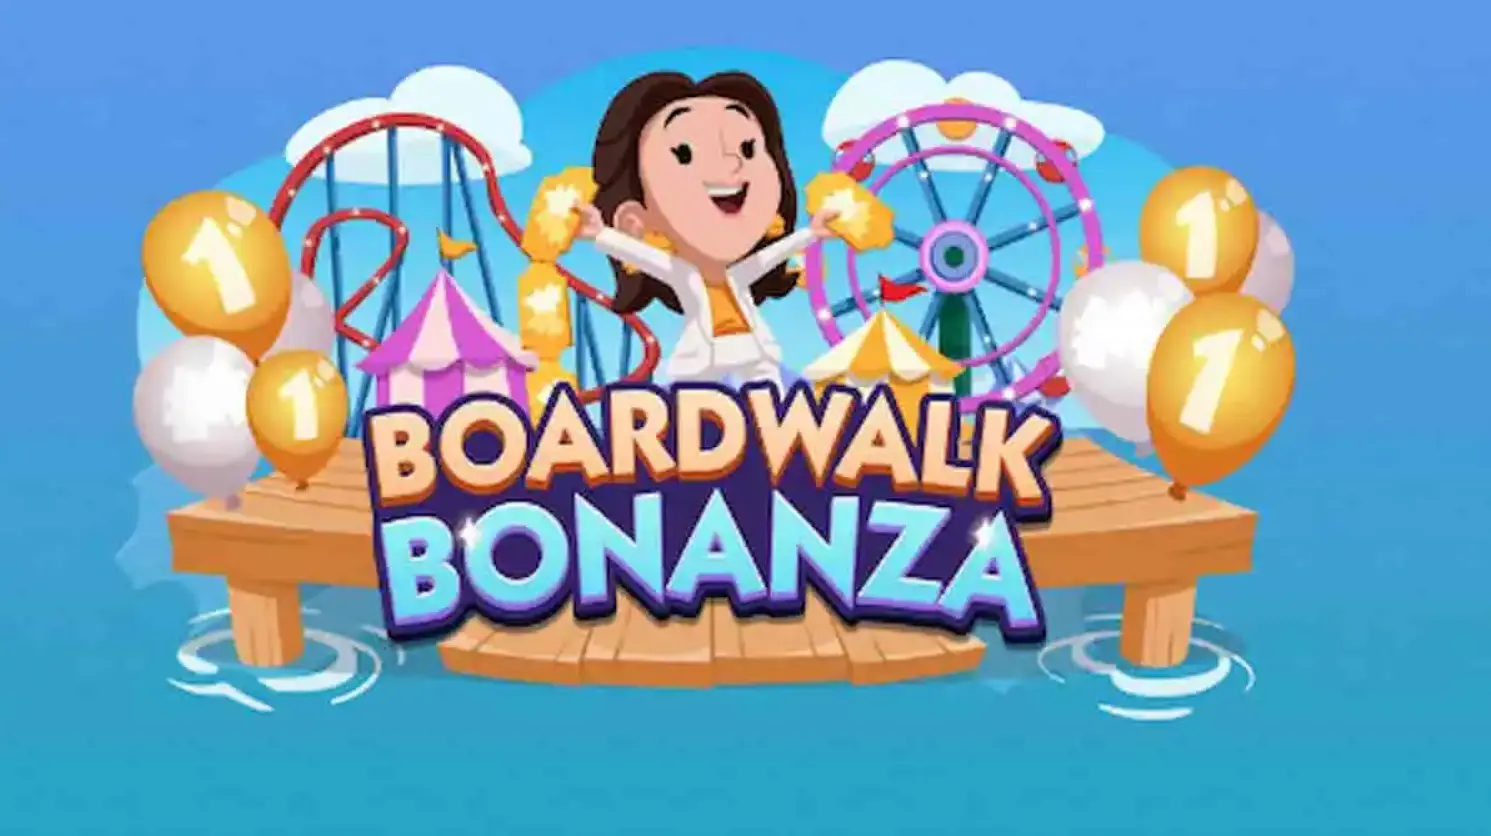 monopoly go boardwalk bonanza rewards and milestones